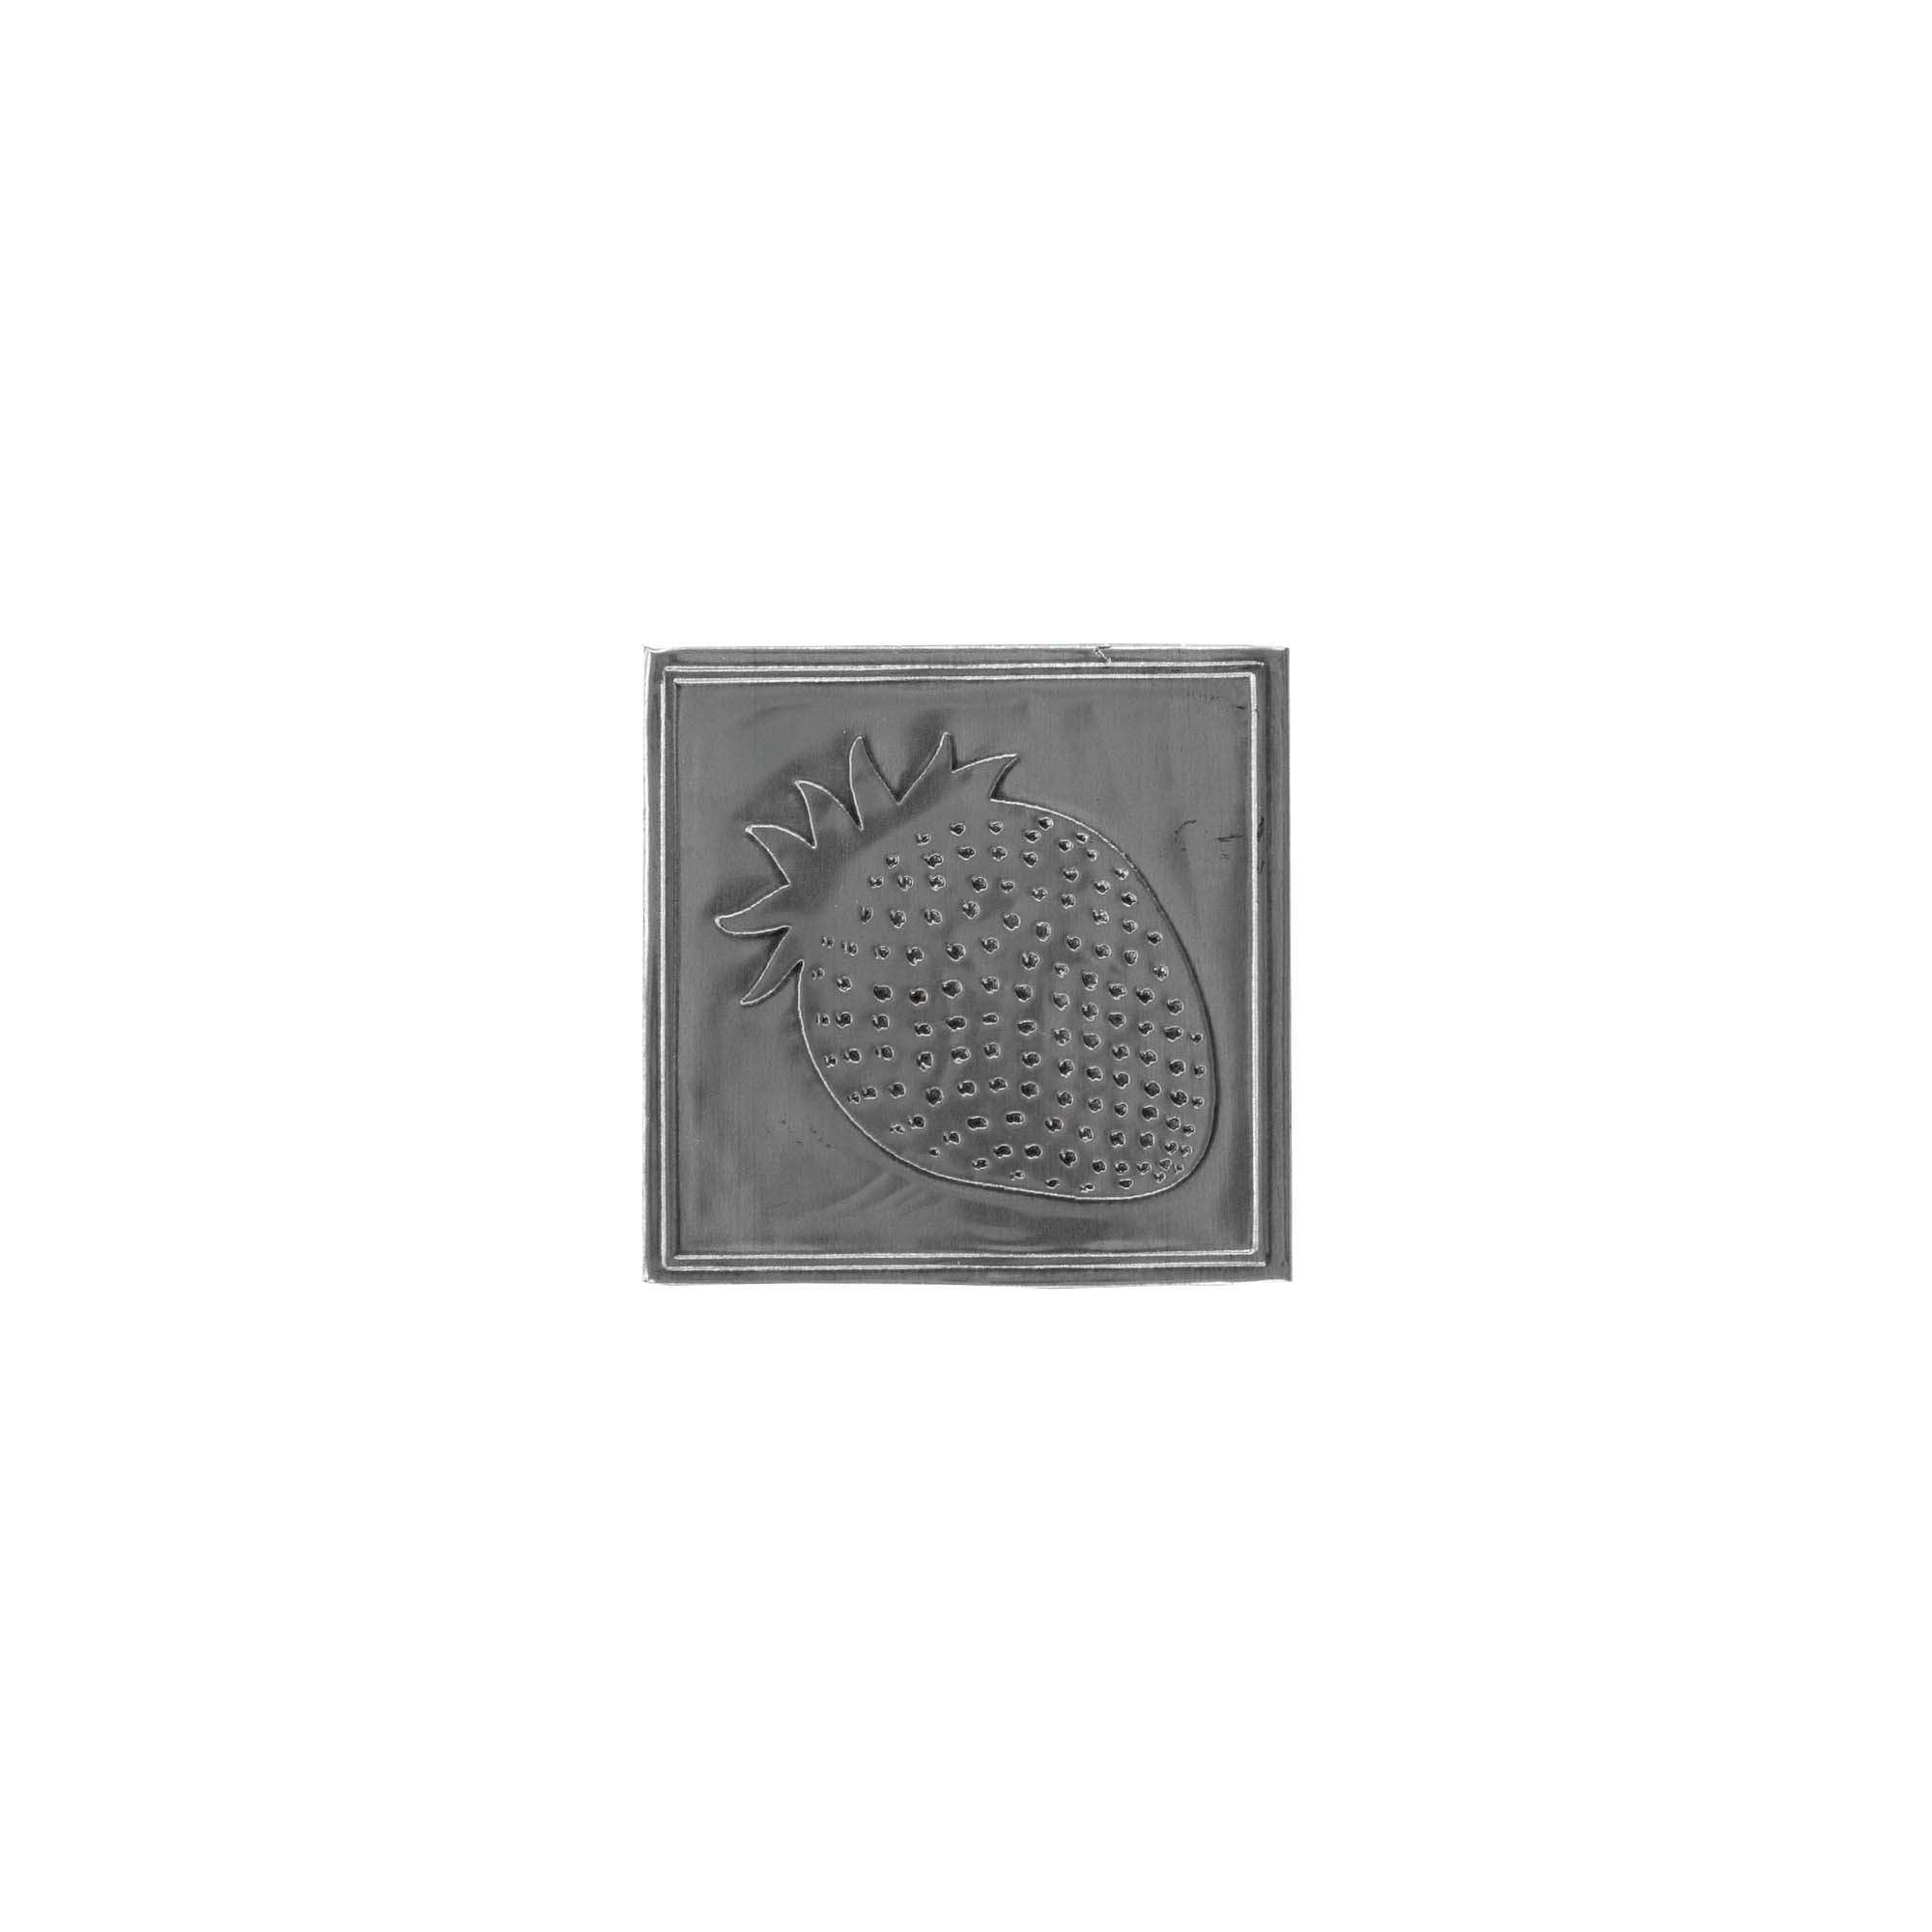 Cínový štítek 'Jahoda', čtvercový, kov, stříbrný